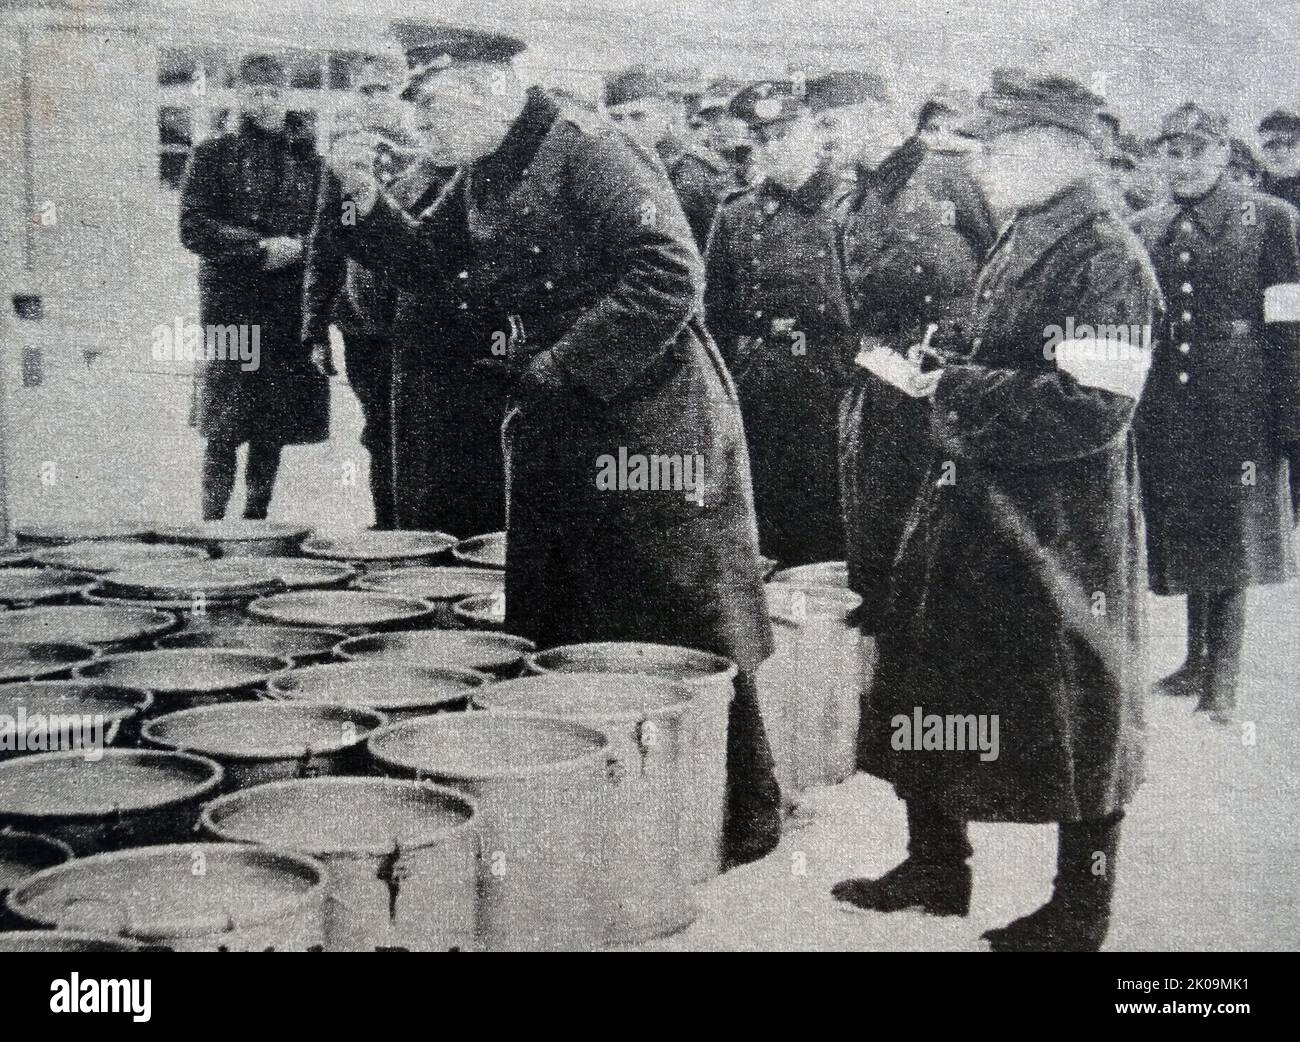 Ein deutscher Offizier, der während des Zweiten Weltkriegs im Kriegsgefangenenlager Wulzburg Dienst hatte, probete die Suppe, bevor sie serviert wird. Gemäß der Konvention des Roten Kreuzes sollten Gefangene die gleichen Lebensmittel wie Wärter erhalten. Stockfoto